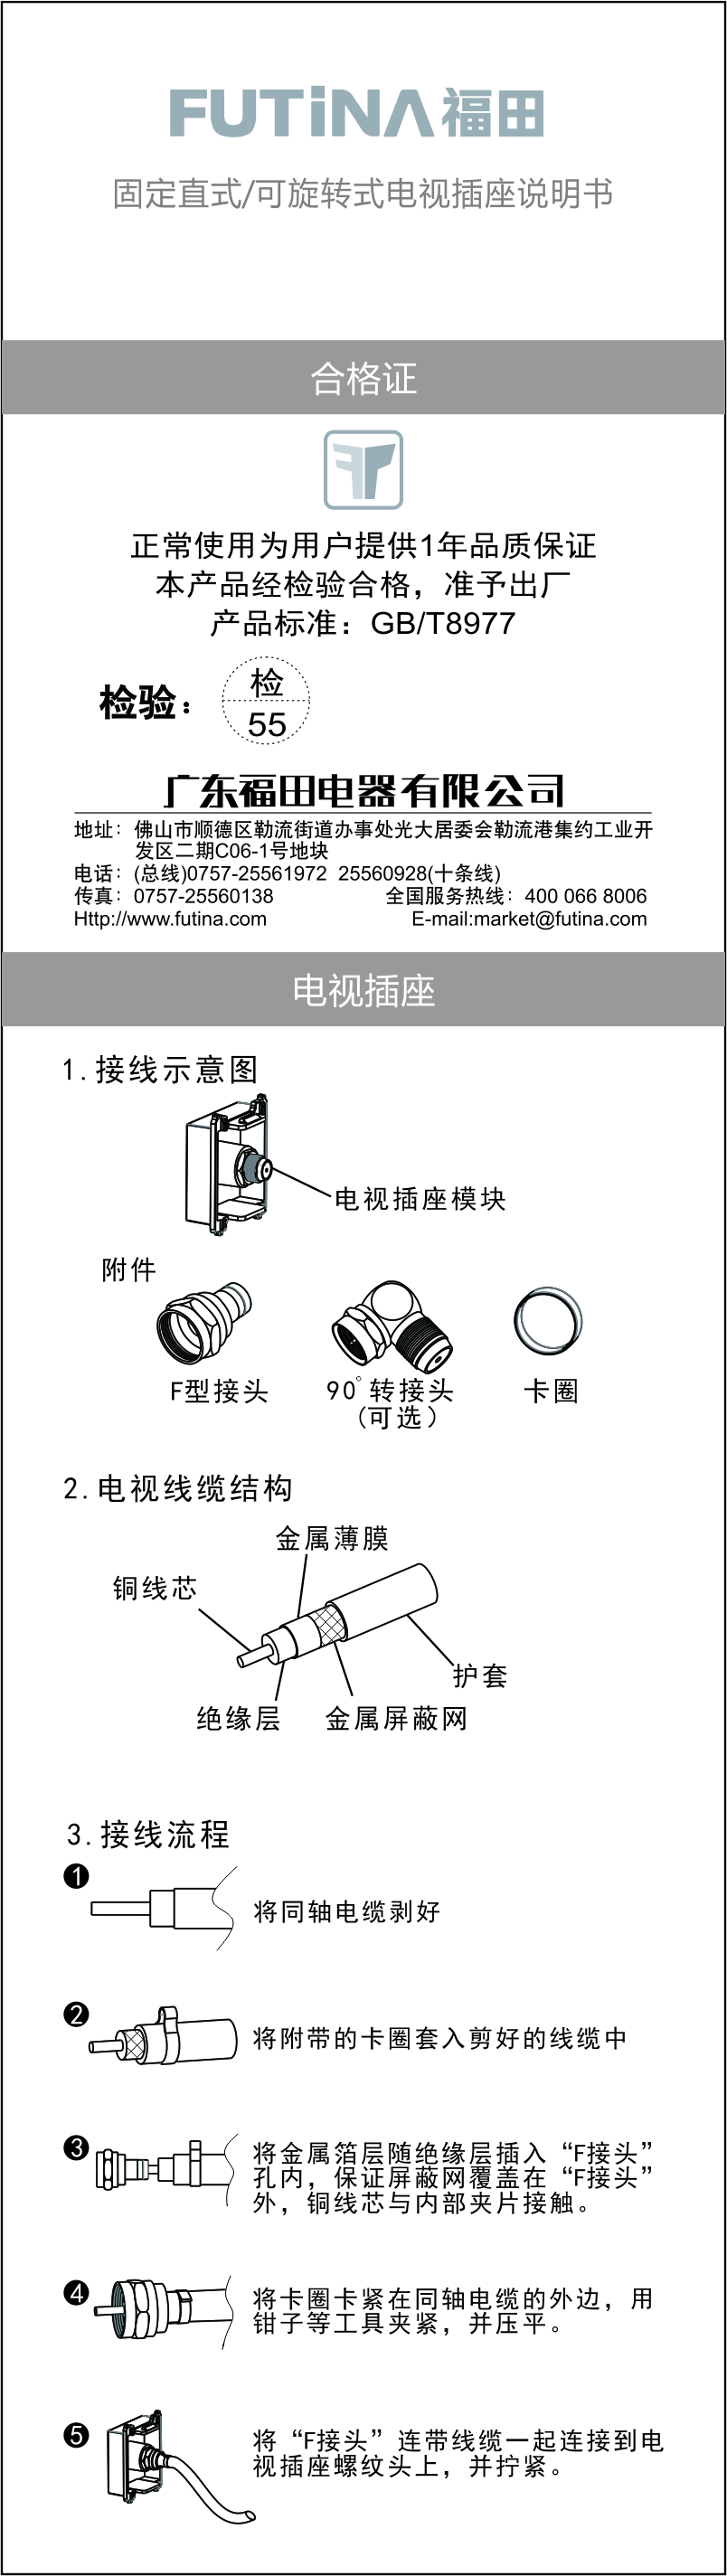 Fixed straight / rotatable TV socket manual